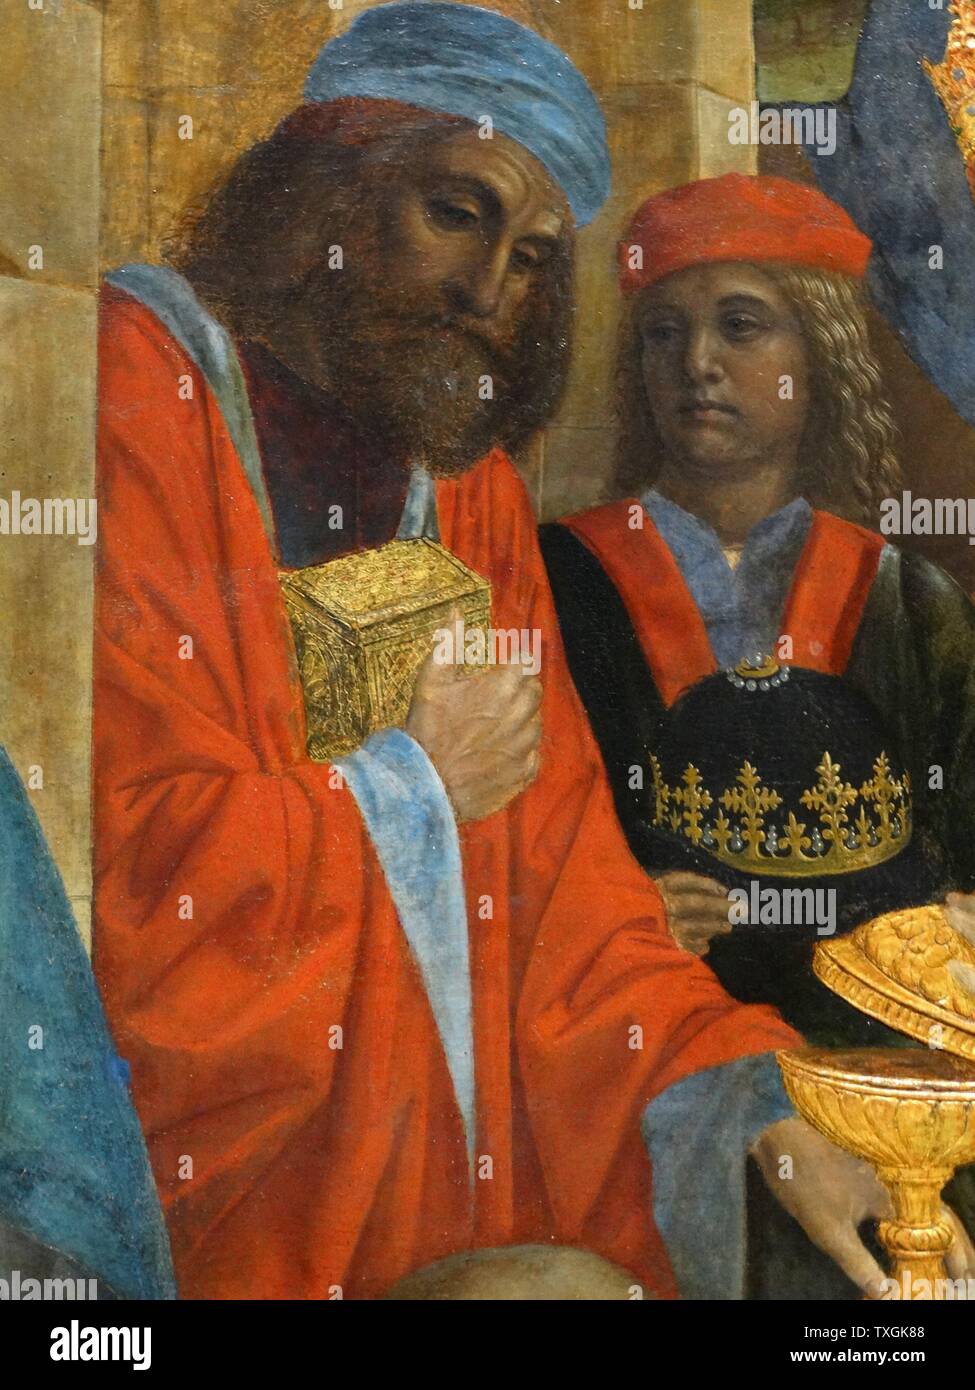 Dettaglio dal dipinto intitolato "L'Adorazione dei Magi" di Vincenzo Foppa (1430-1515) un pittore Northern-Italian, attivo in stile rinascimentale. Datata XVI Secolo Foto Stock